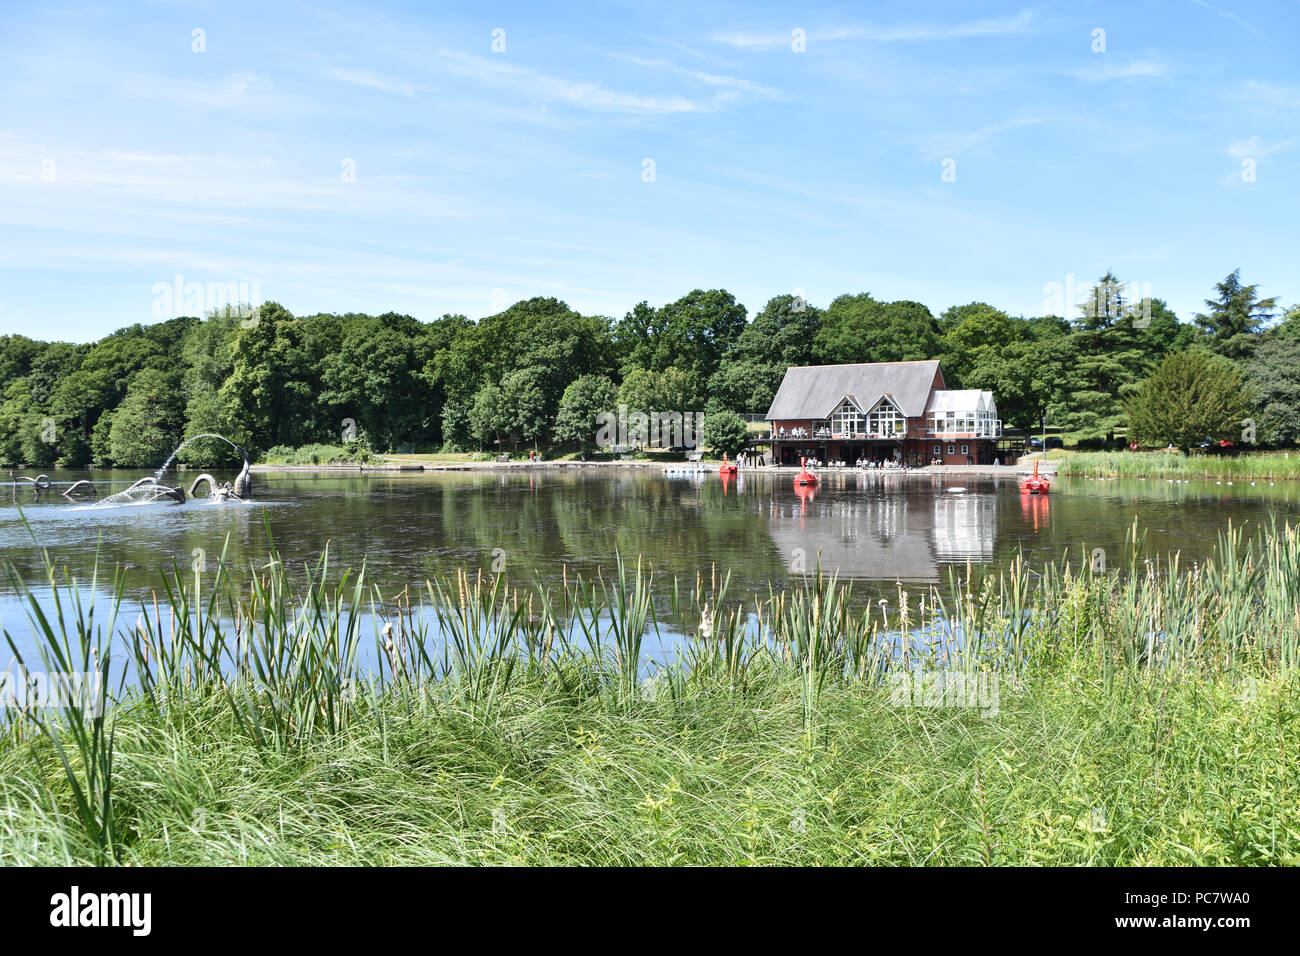 Parc du lac avec bateaux et dragon sculpture Llandrindod Wells, Pays de Galles. Juin 2018 Banque D'Images